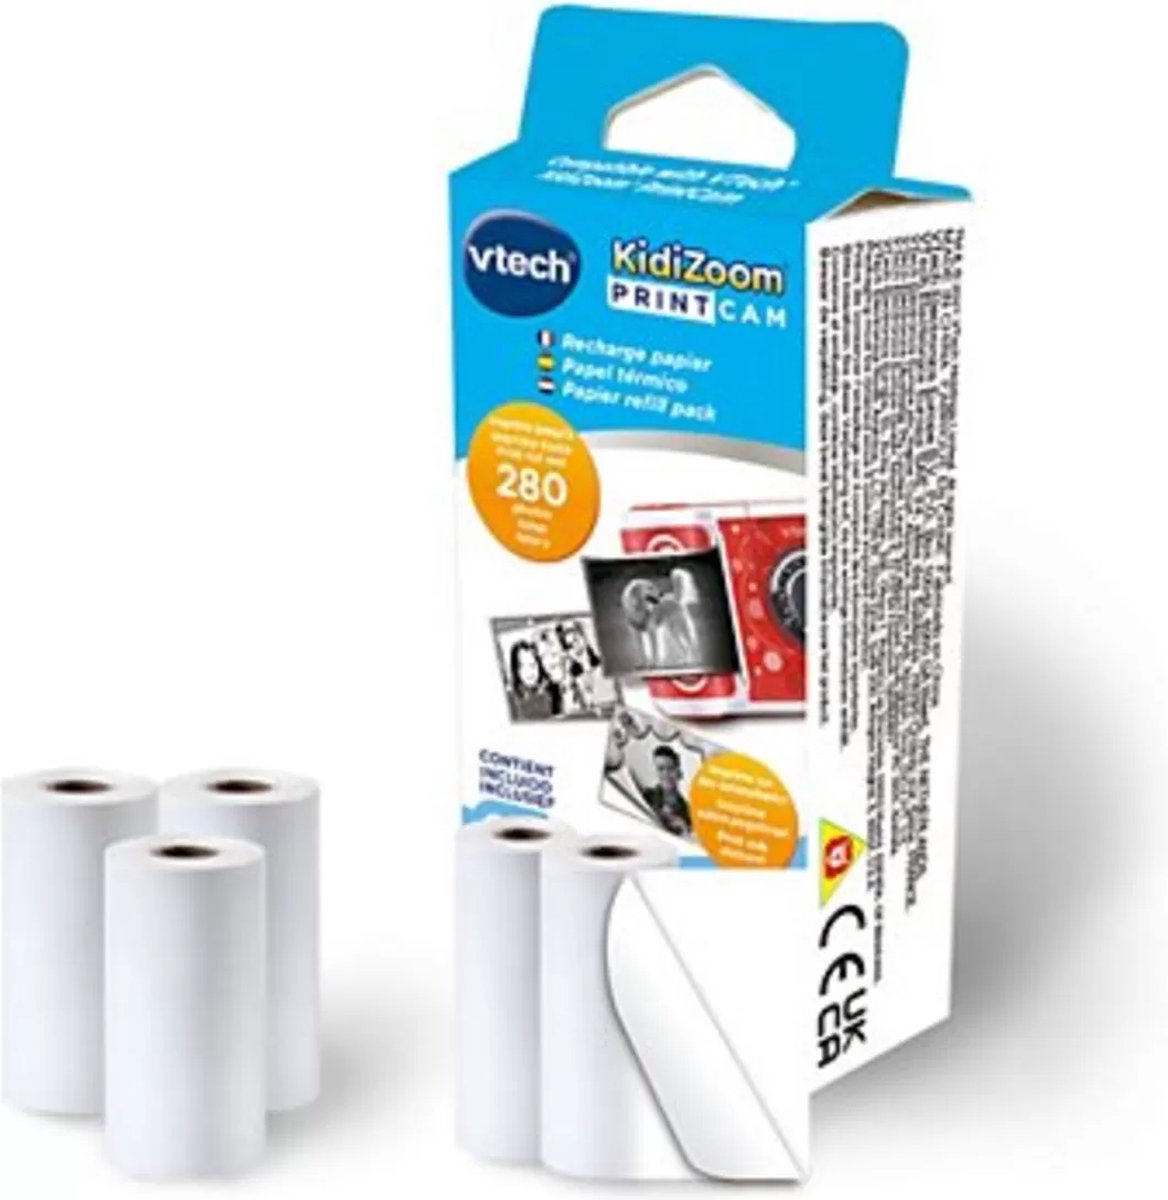 VTech KidiZoom Print Cam Refill Pack - 5 Rollen - Navulverpakking